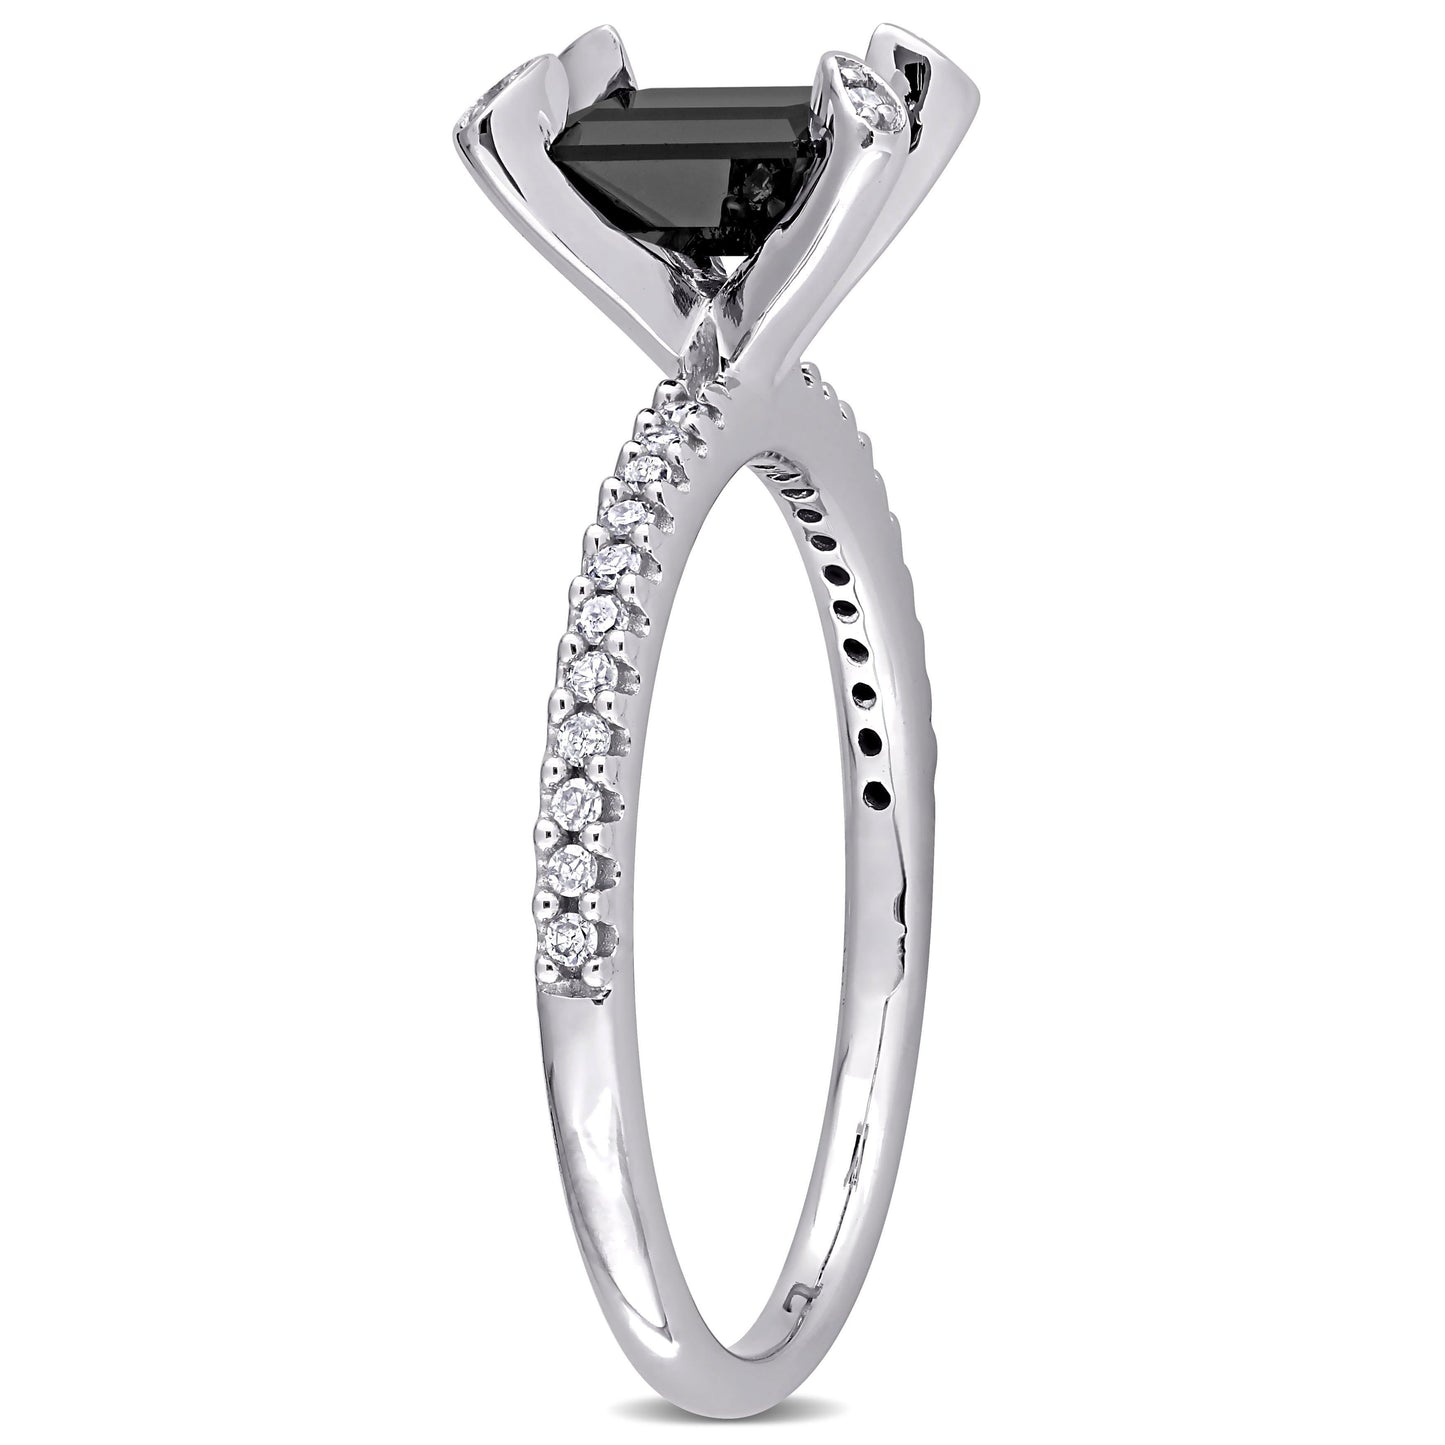 Julie Leah Black & White Diamond Ring in 10k White Gold